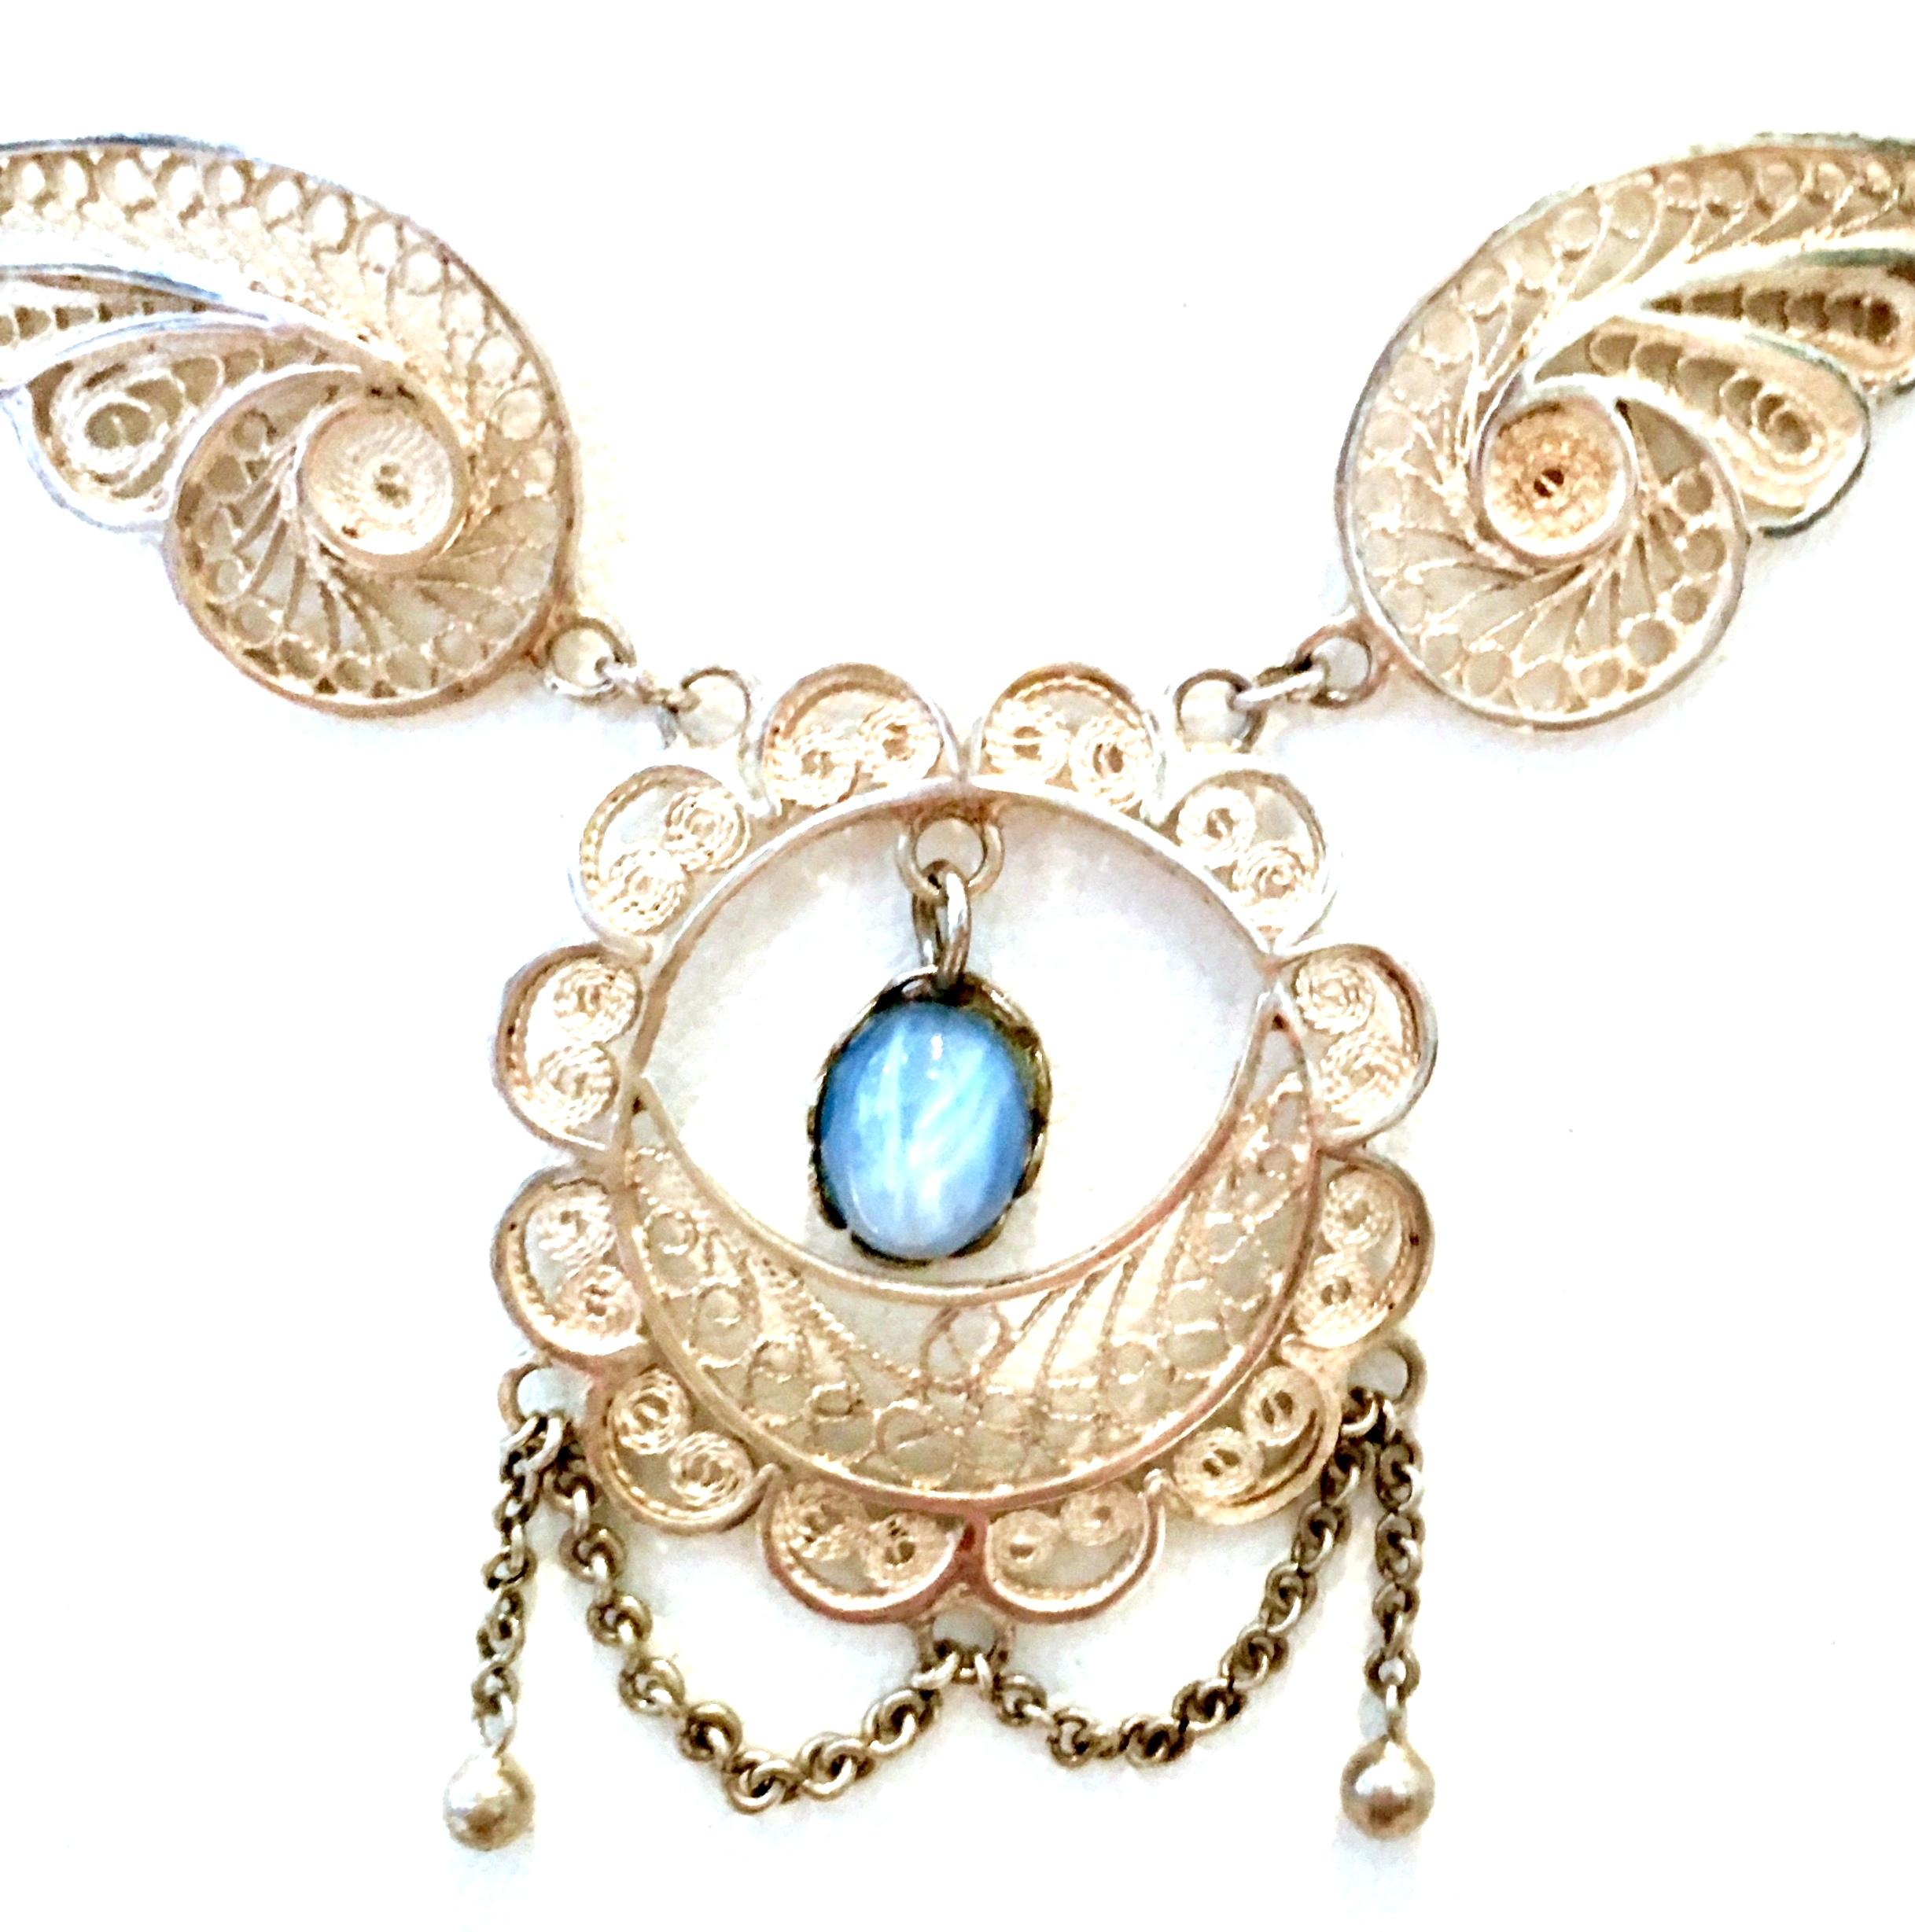 Women's or Men's Antique Art Nouveau Sterling Silver & Moonstone Pendant Necklace